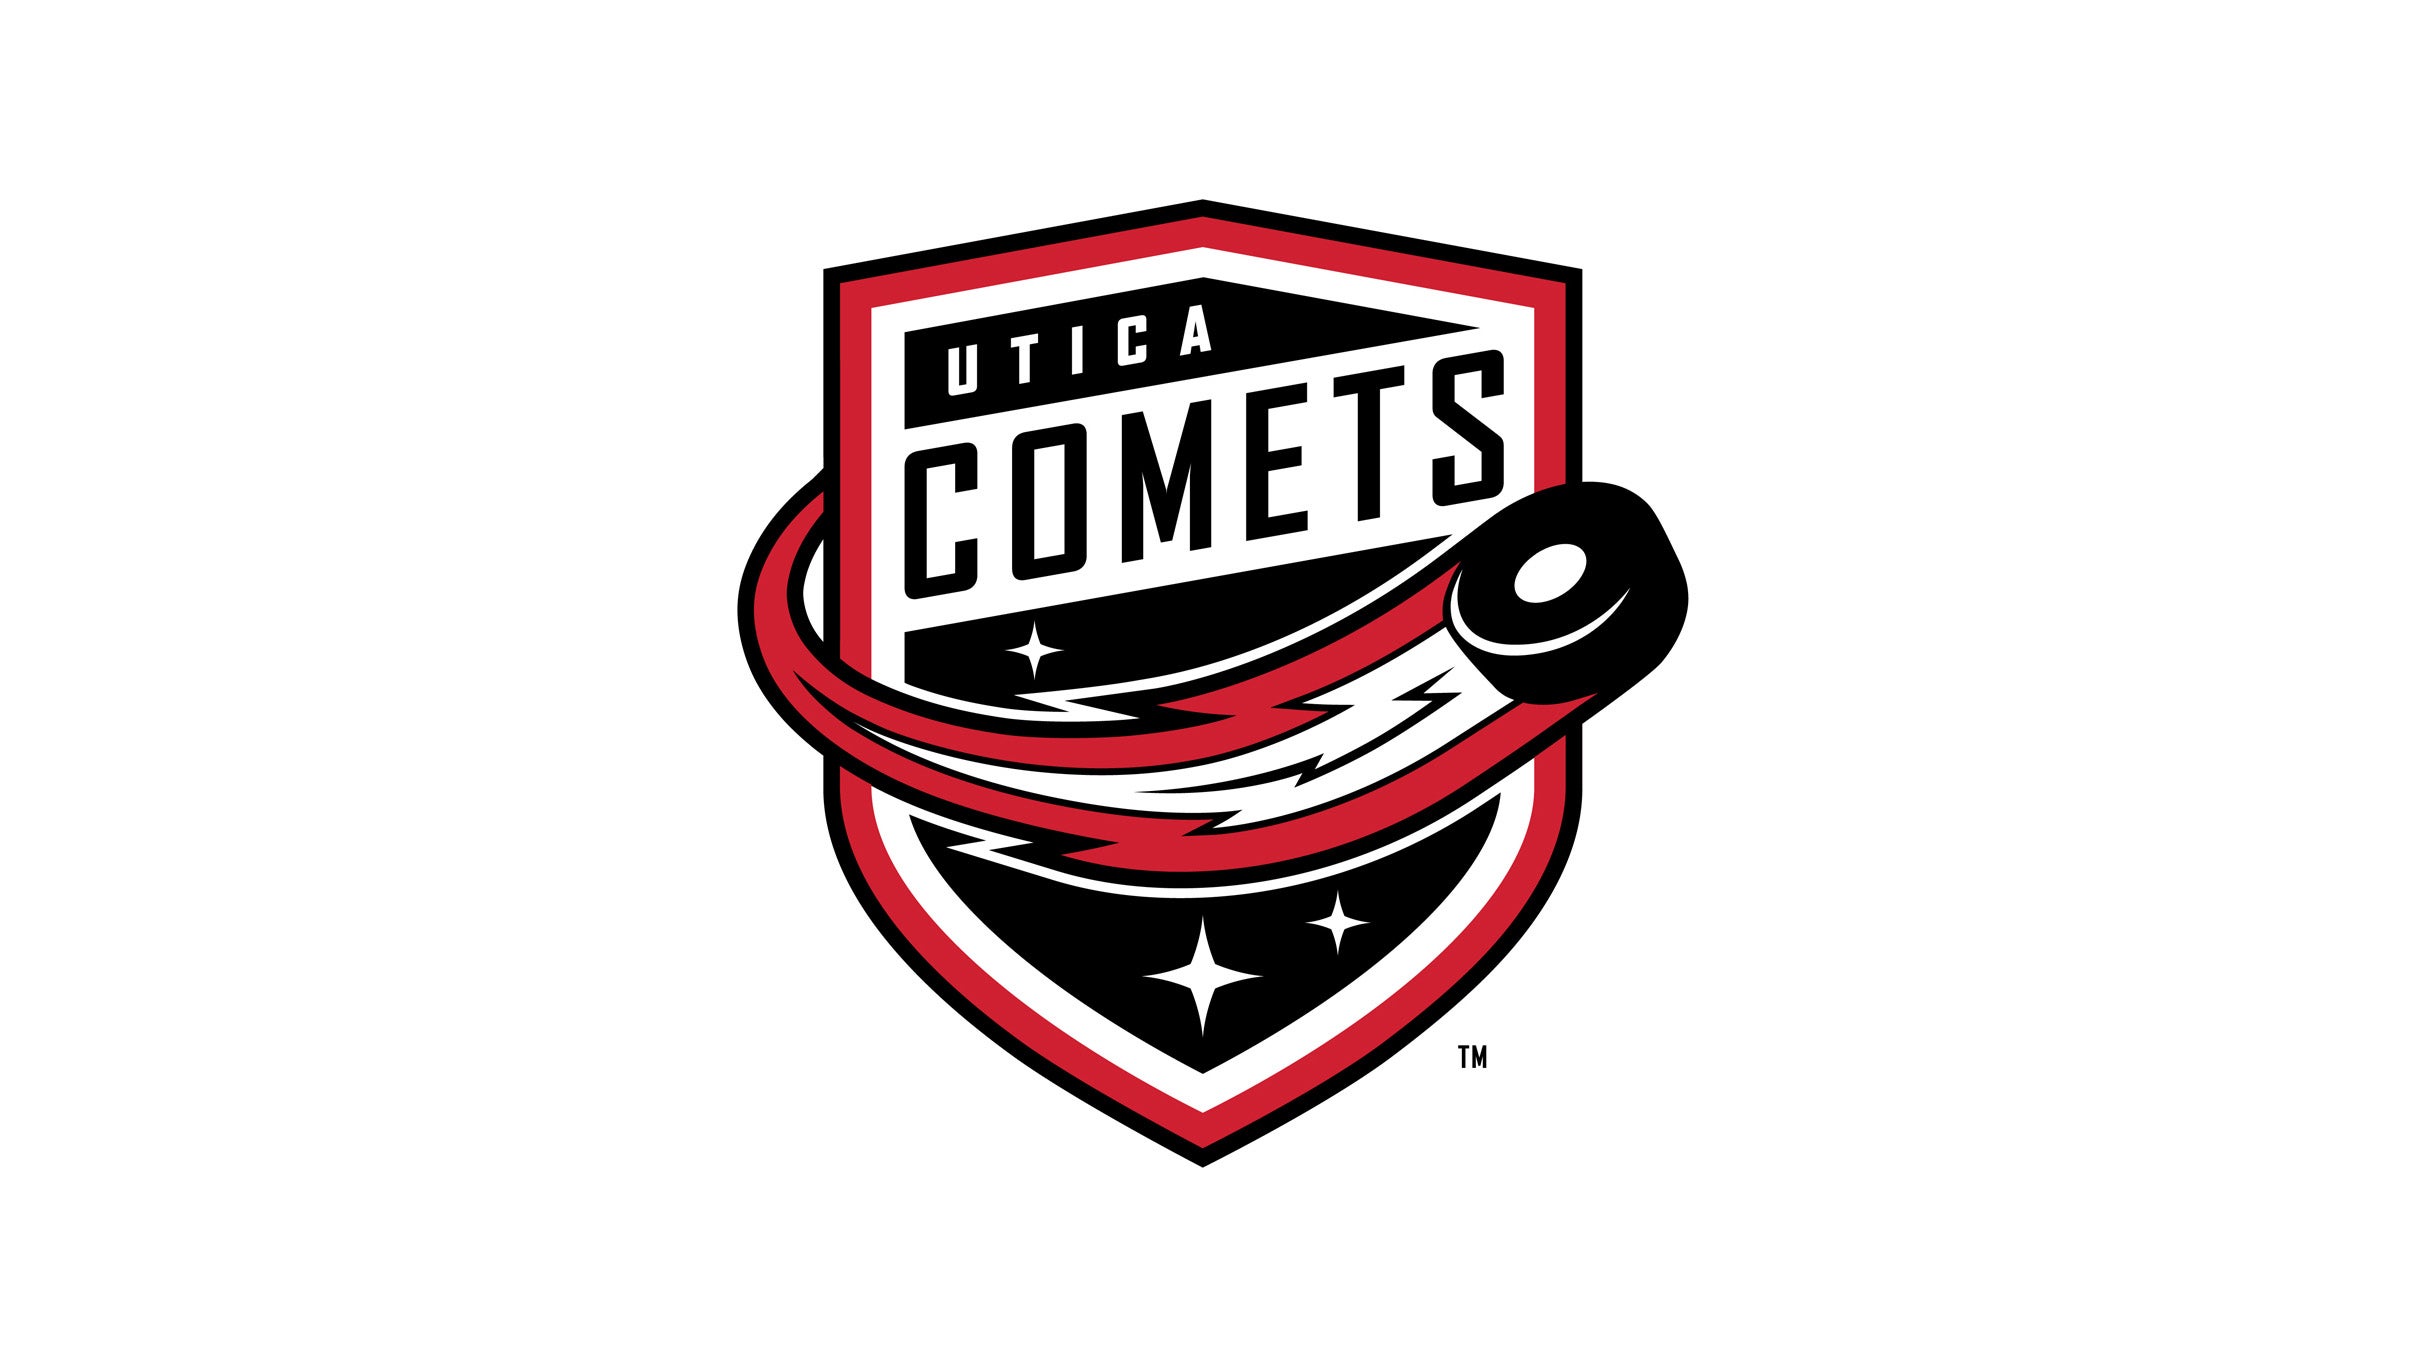 Utica Comets vs. Rochester Americans